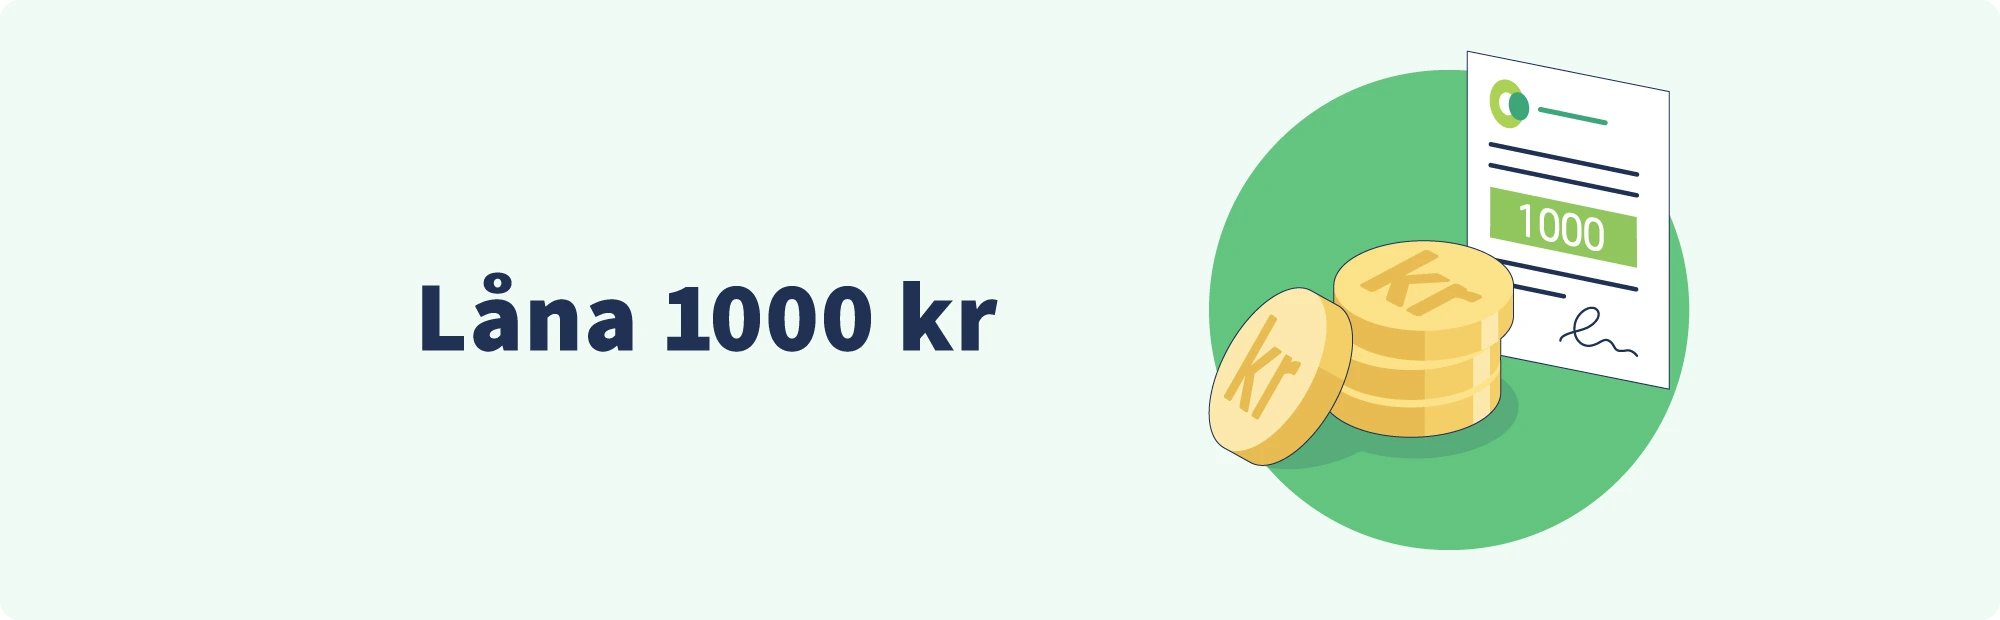 Låna 1000 kr